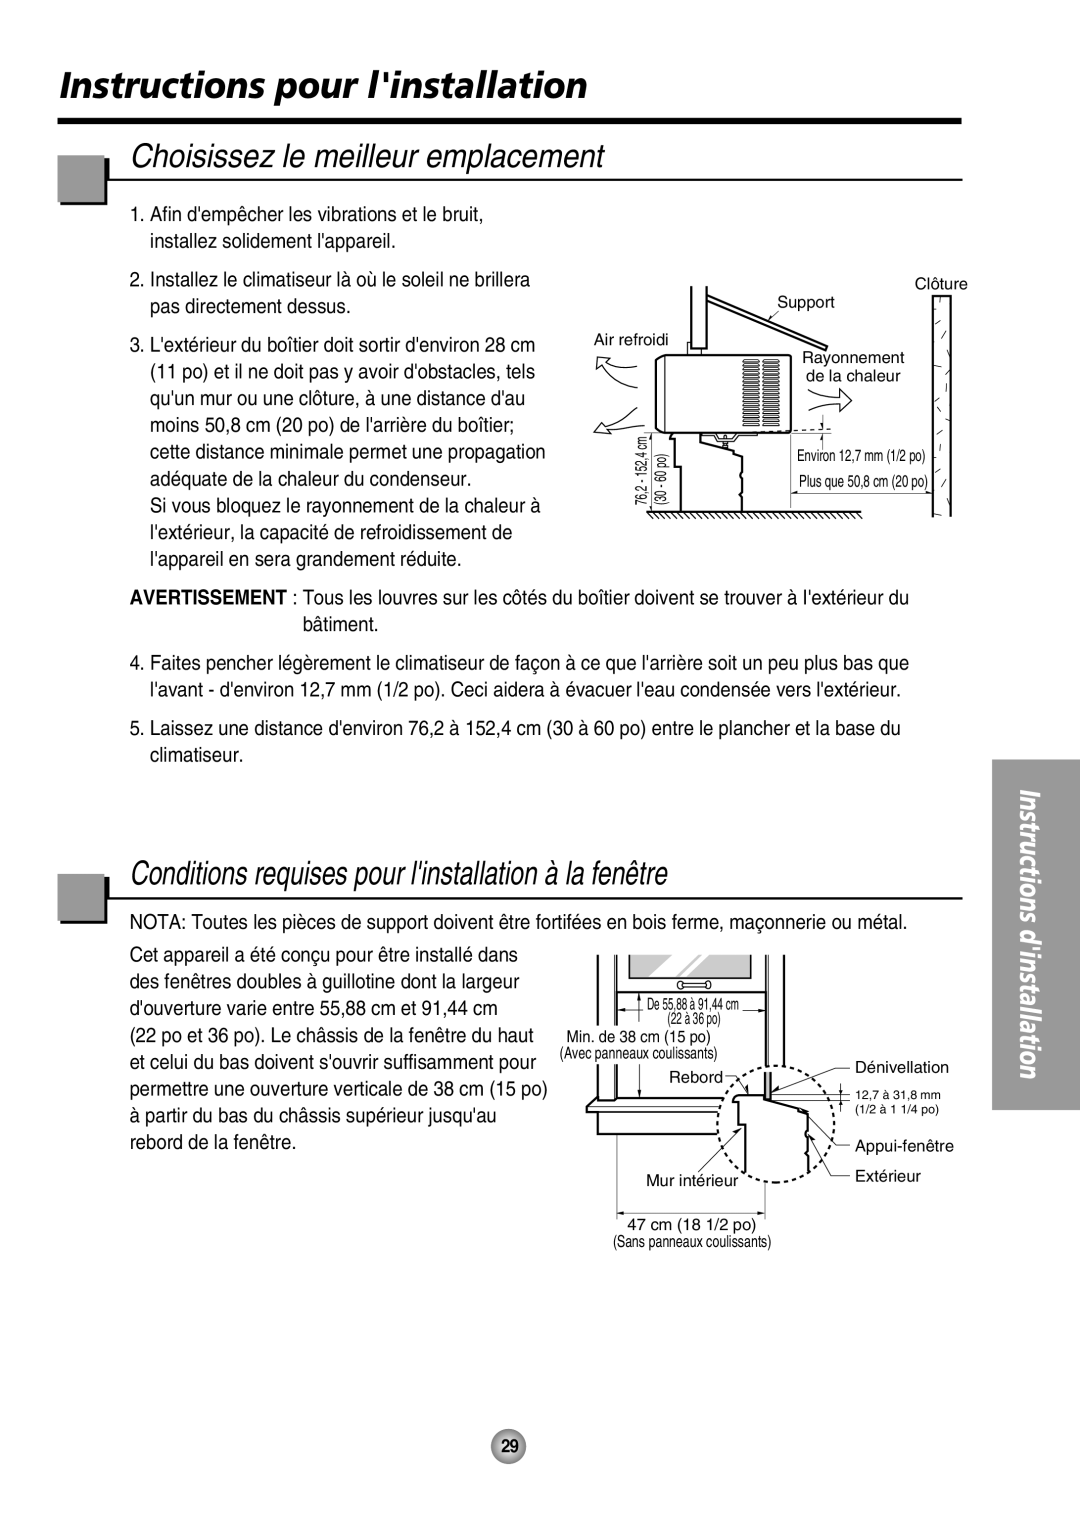 Panasonic CW-XC64HU manual Instructions pour linstallation, Choisissez le meilleur emplacement, dinstallation 